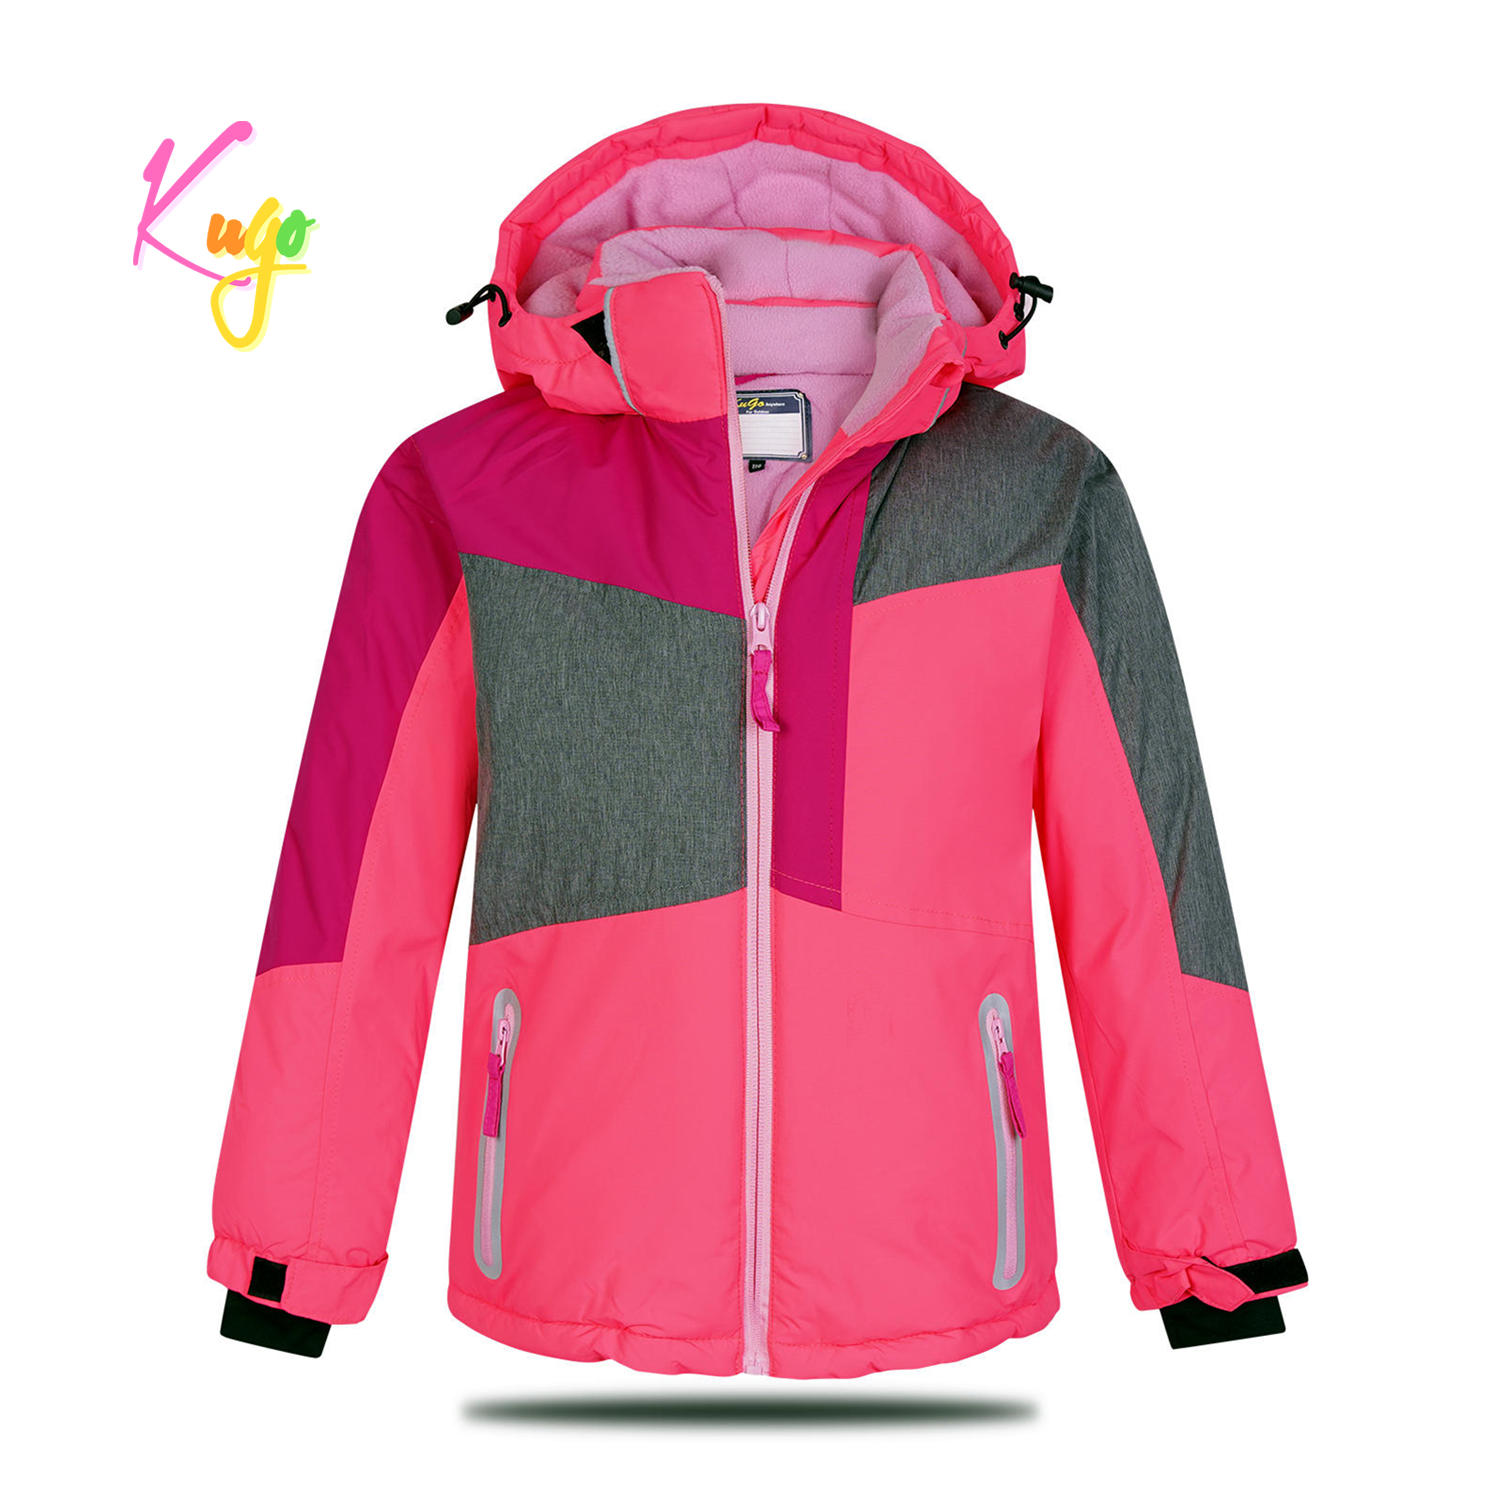 Dívčí zimní bunda - KUGO PB3888, růžová Barva: Růžová, Velikost: 110